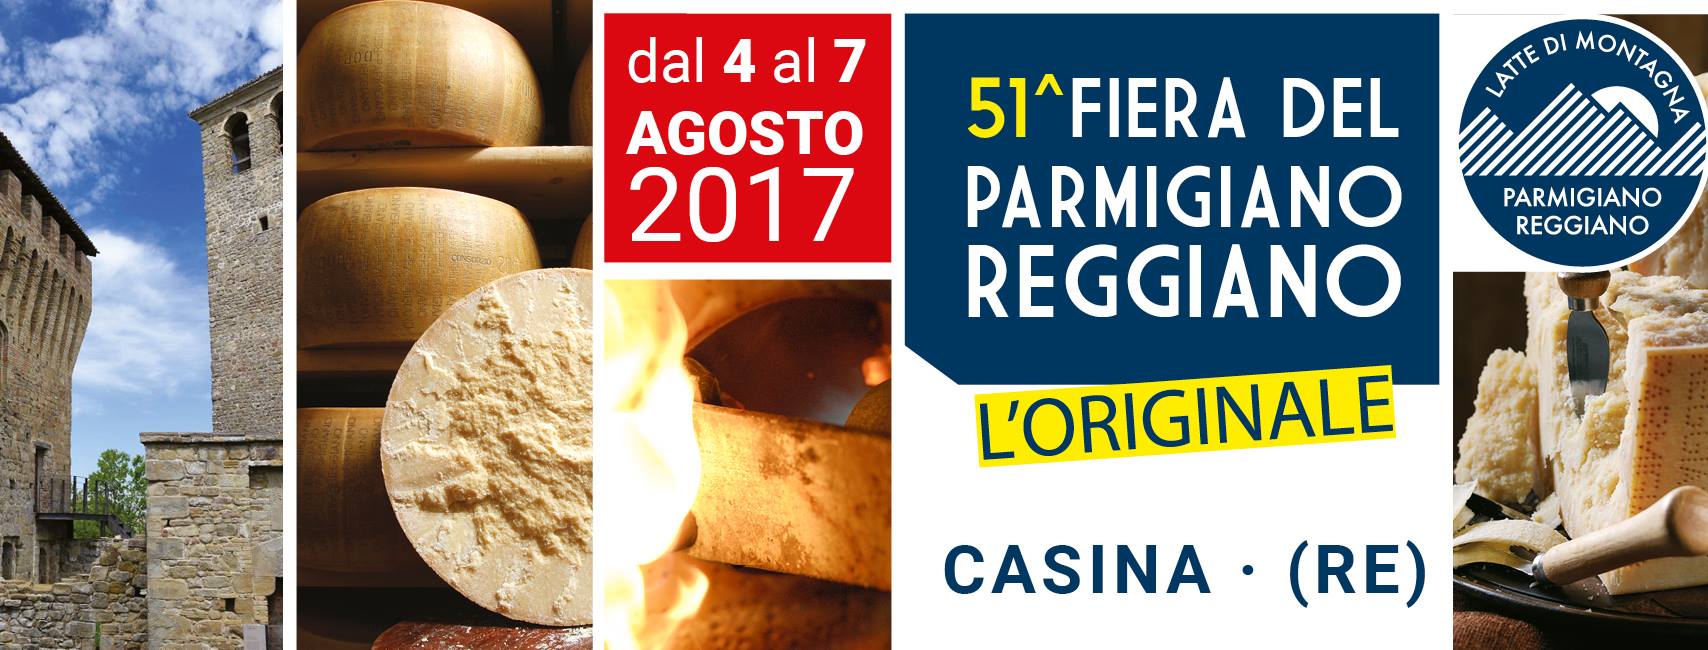 Fiera del Parmigiano Reggiano di montagna - Casina 2017